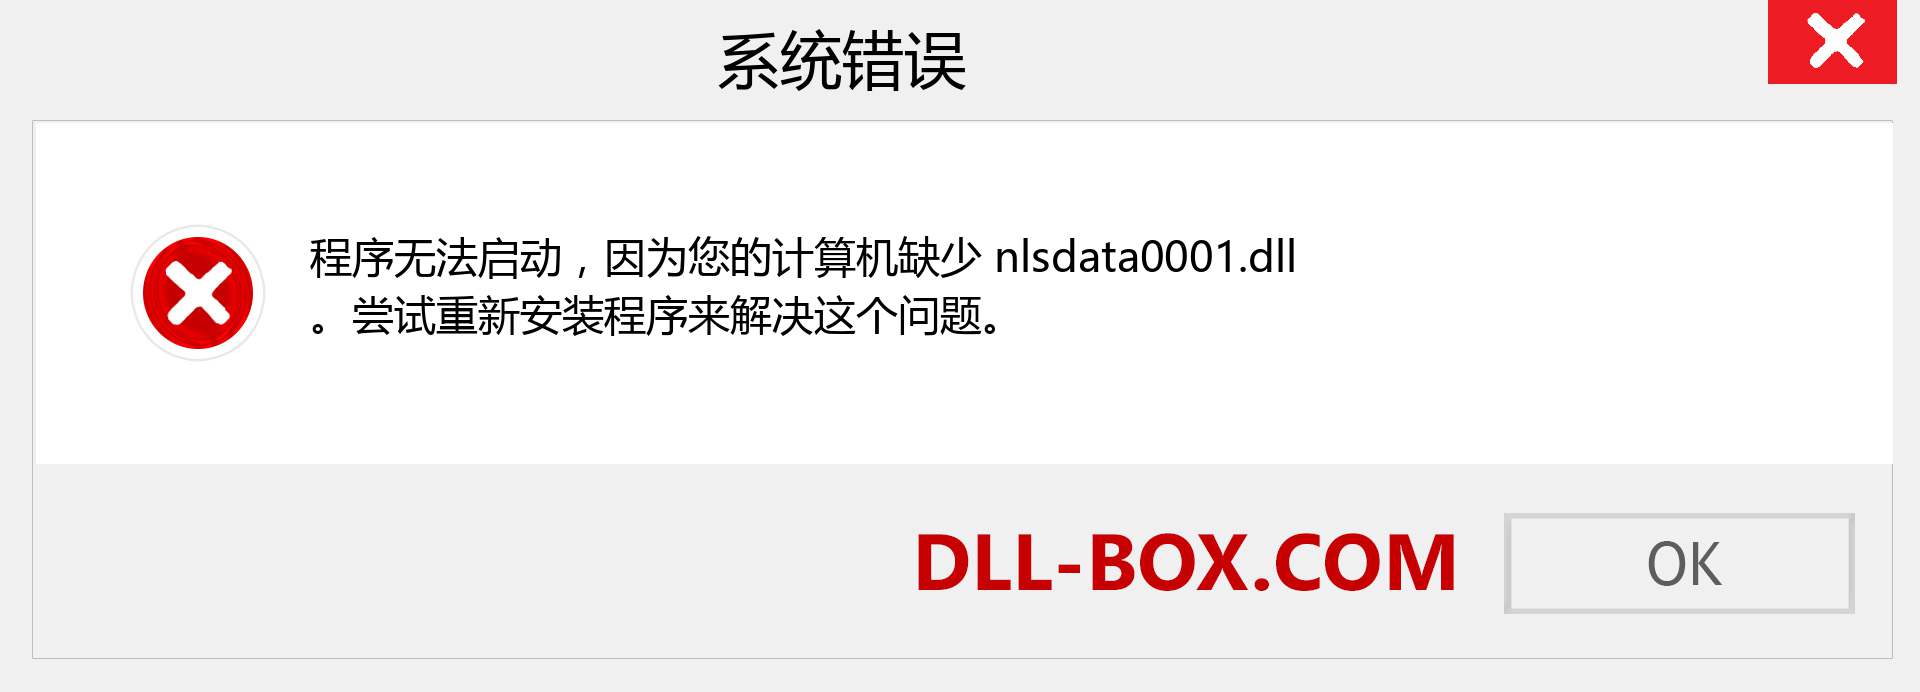 nlsdata0001.dll 文件丢失？。 适用于 Windows 7、8、10 的下载 - 修复 Windows、照片、图像上的 nlsdata0001 dll 丢失错误